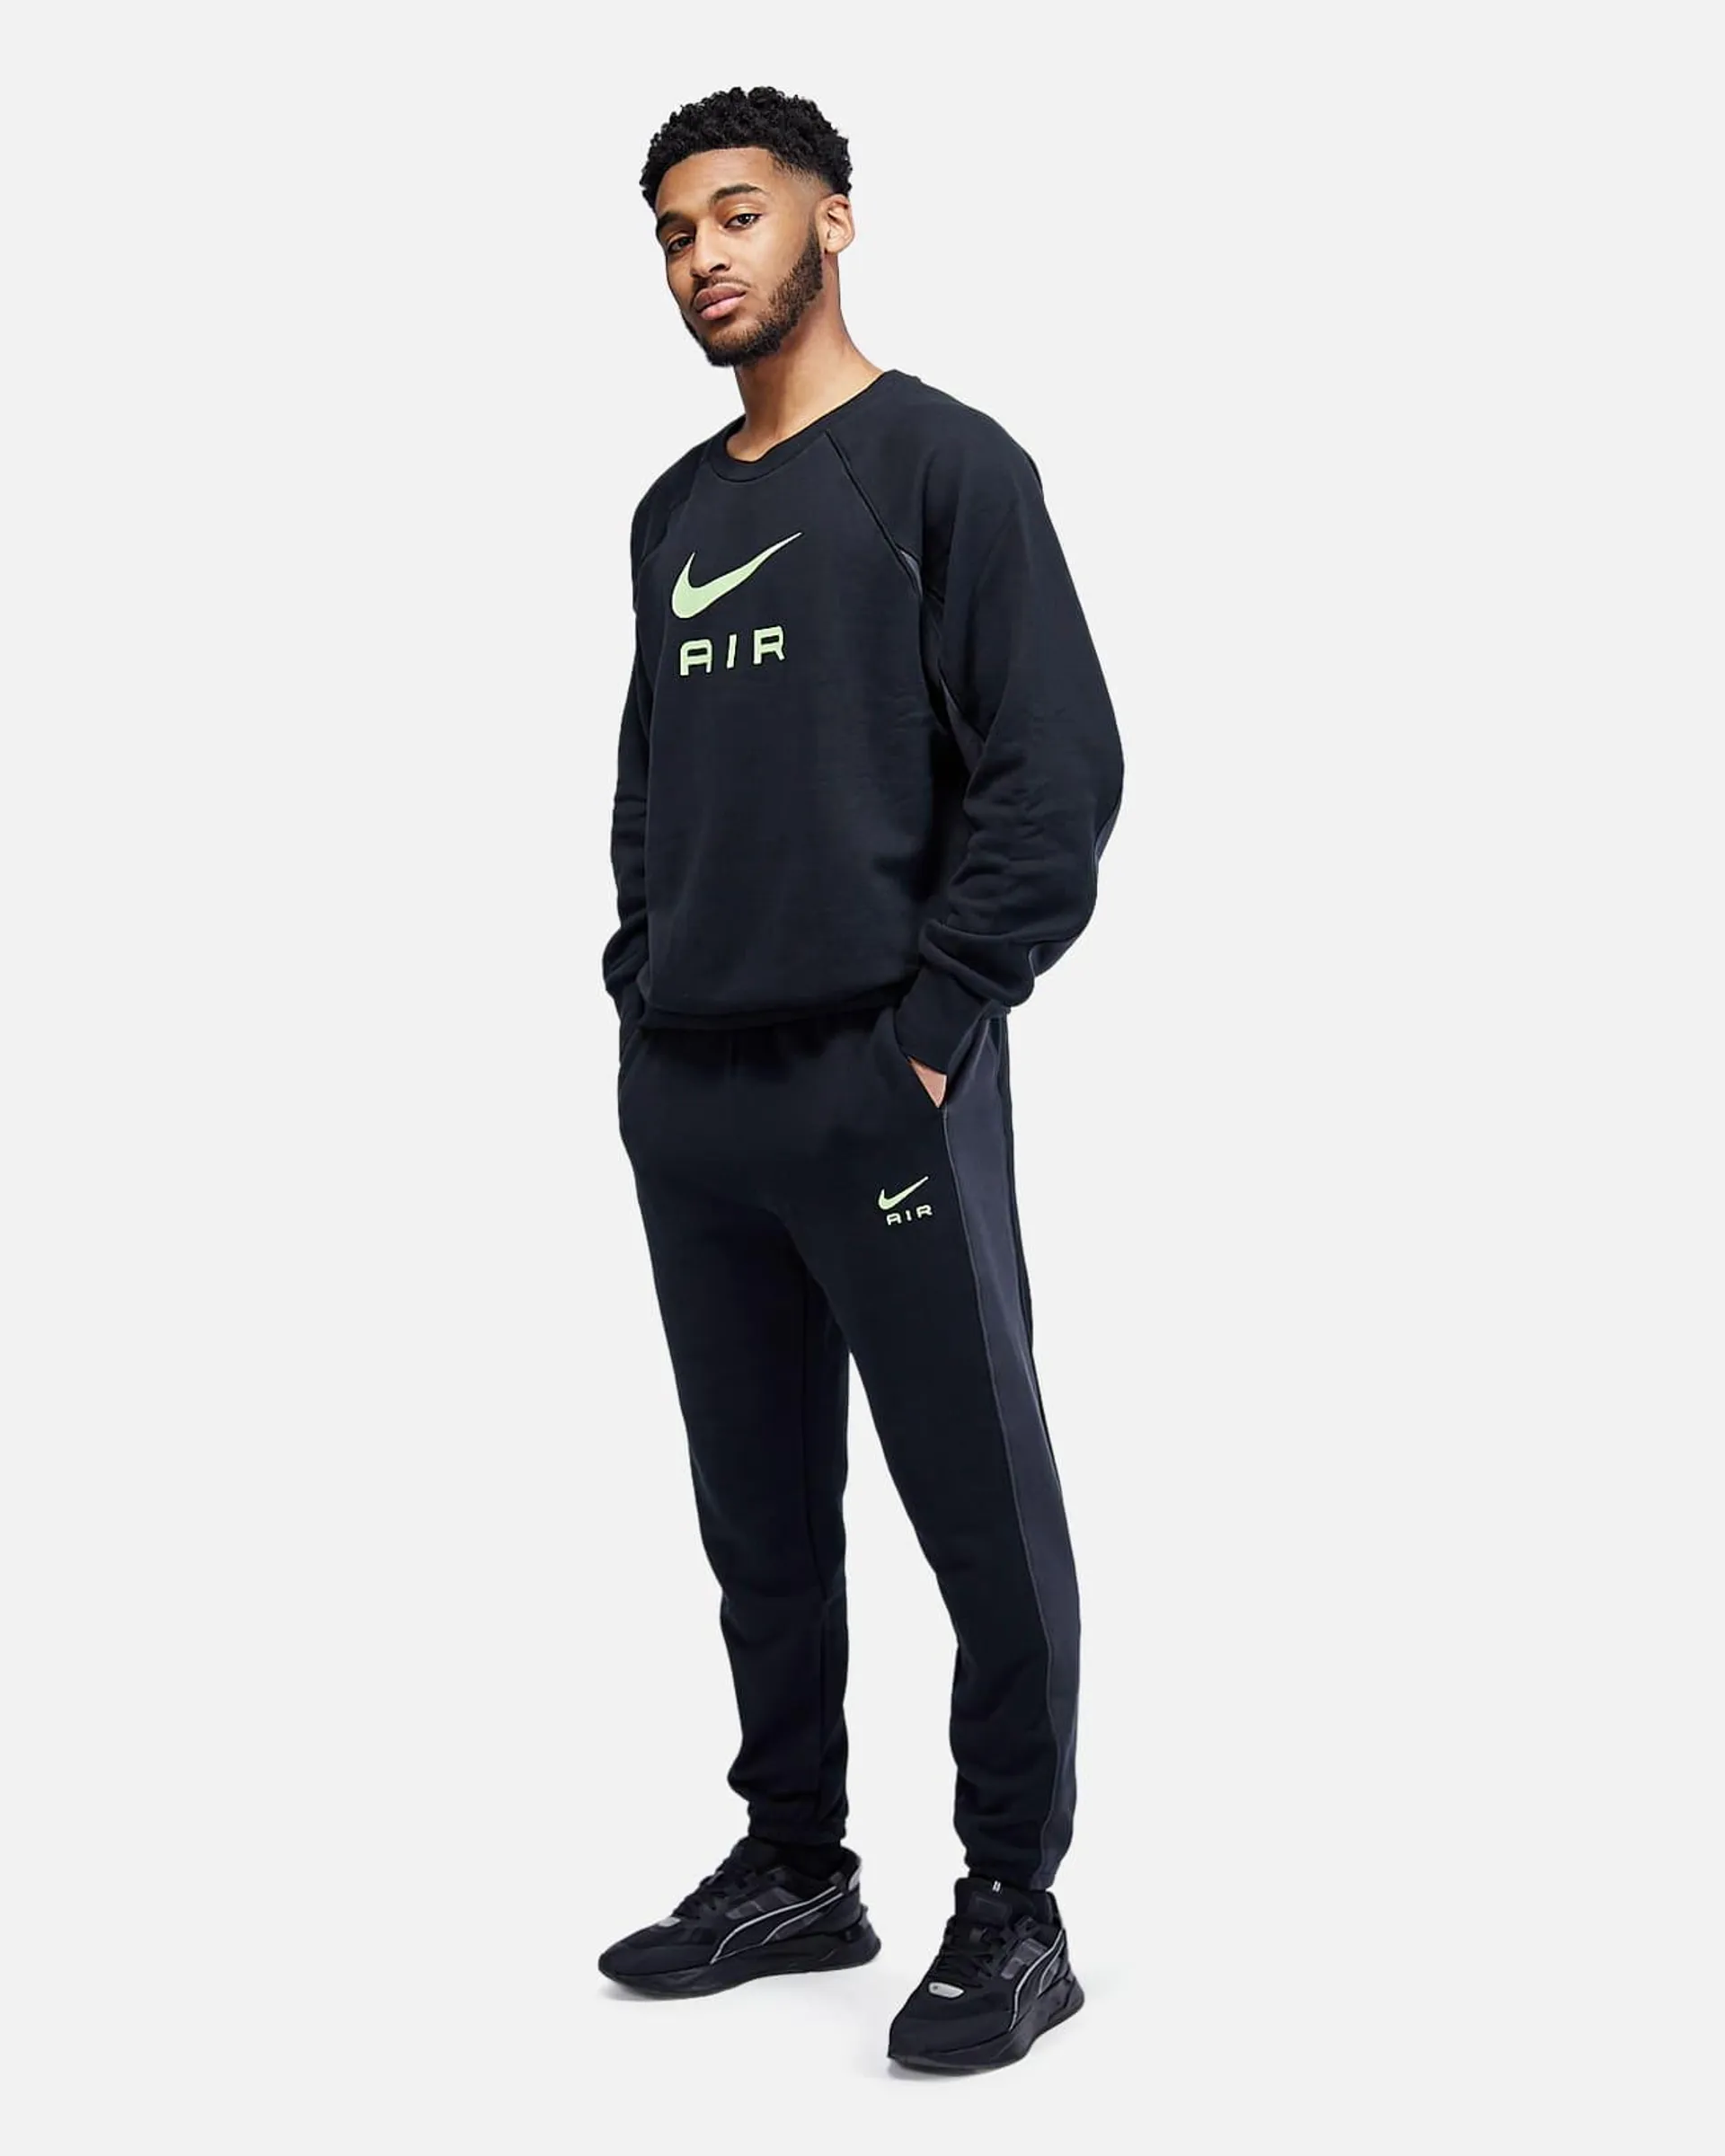 Survêtement Nike Air- Noir/Vert